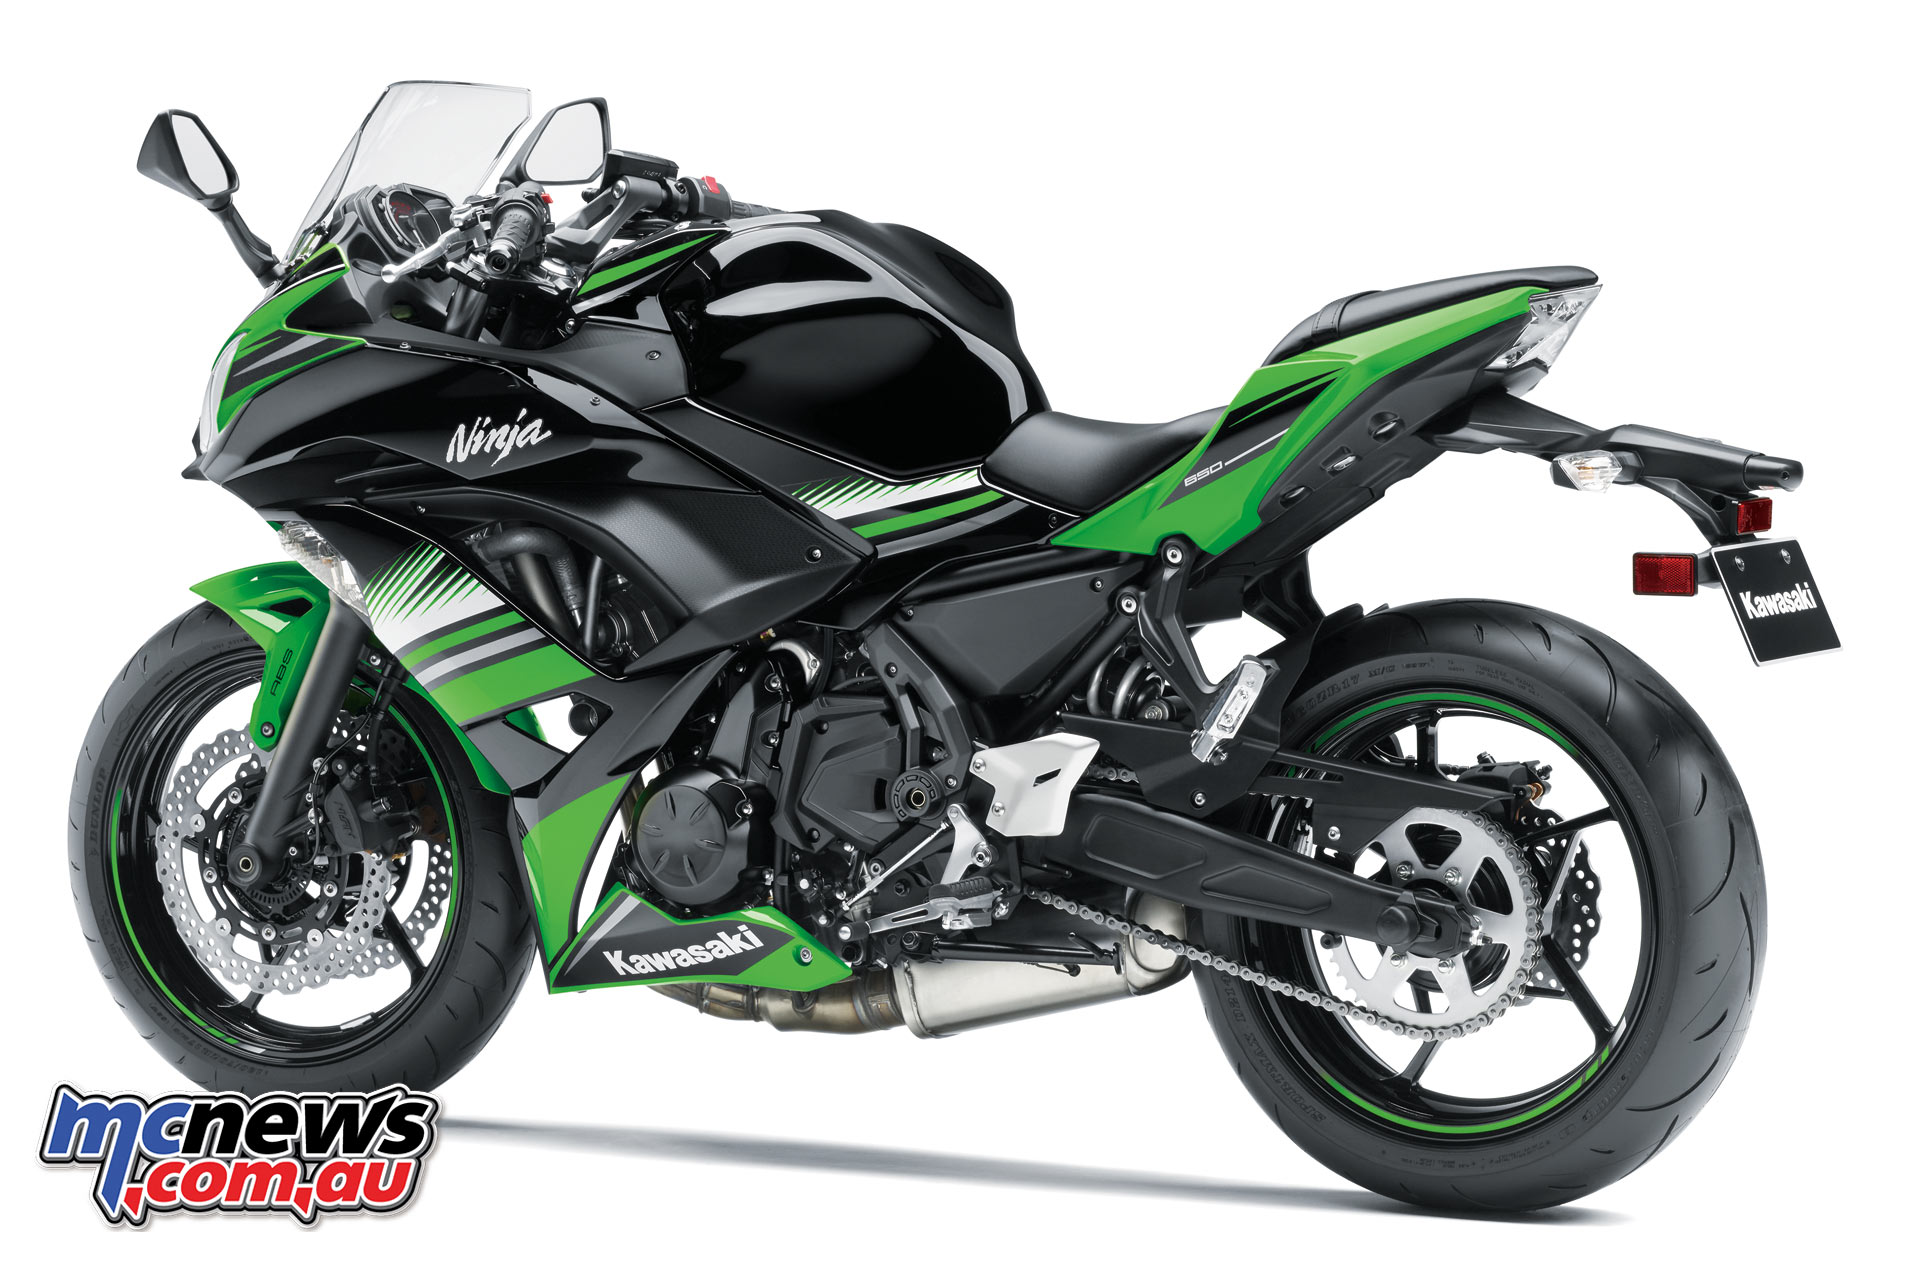 Kawasakis New For 2017 Ninja 650 650L MCNewscomau